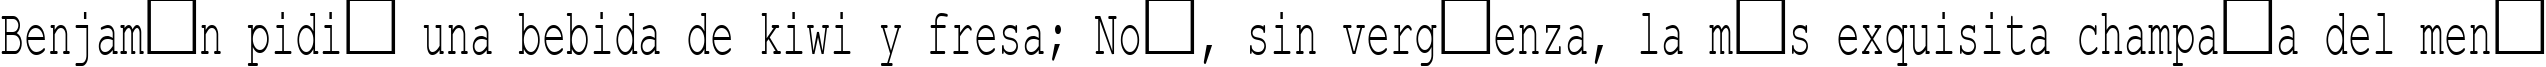 Пример написания шрифтом Courier New Cyr60n текста на испанском